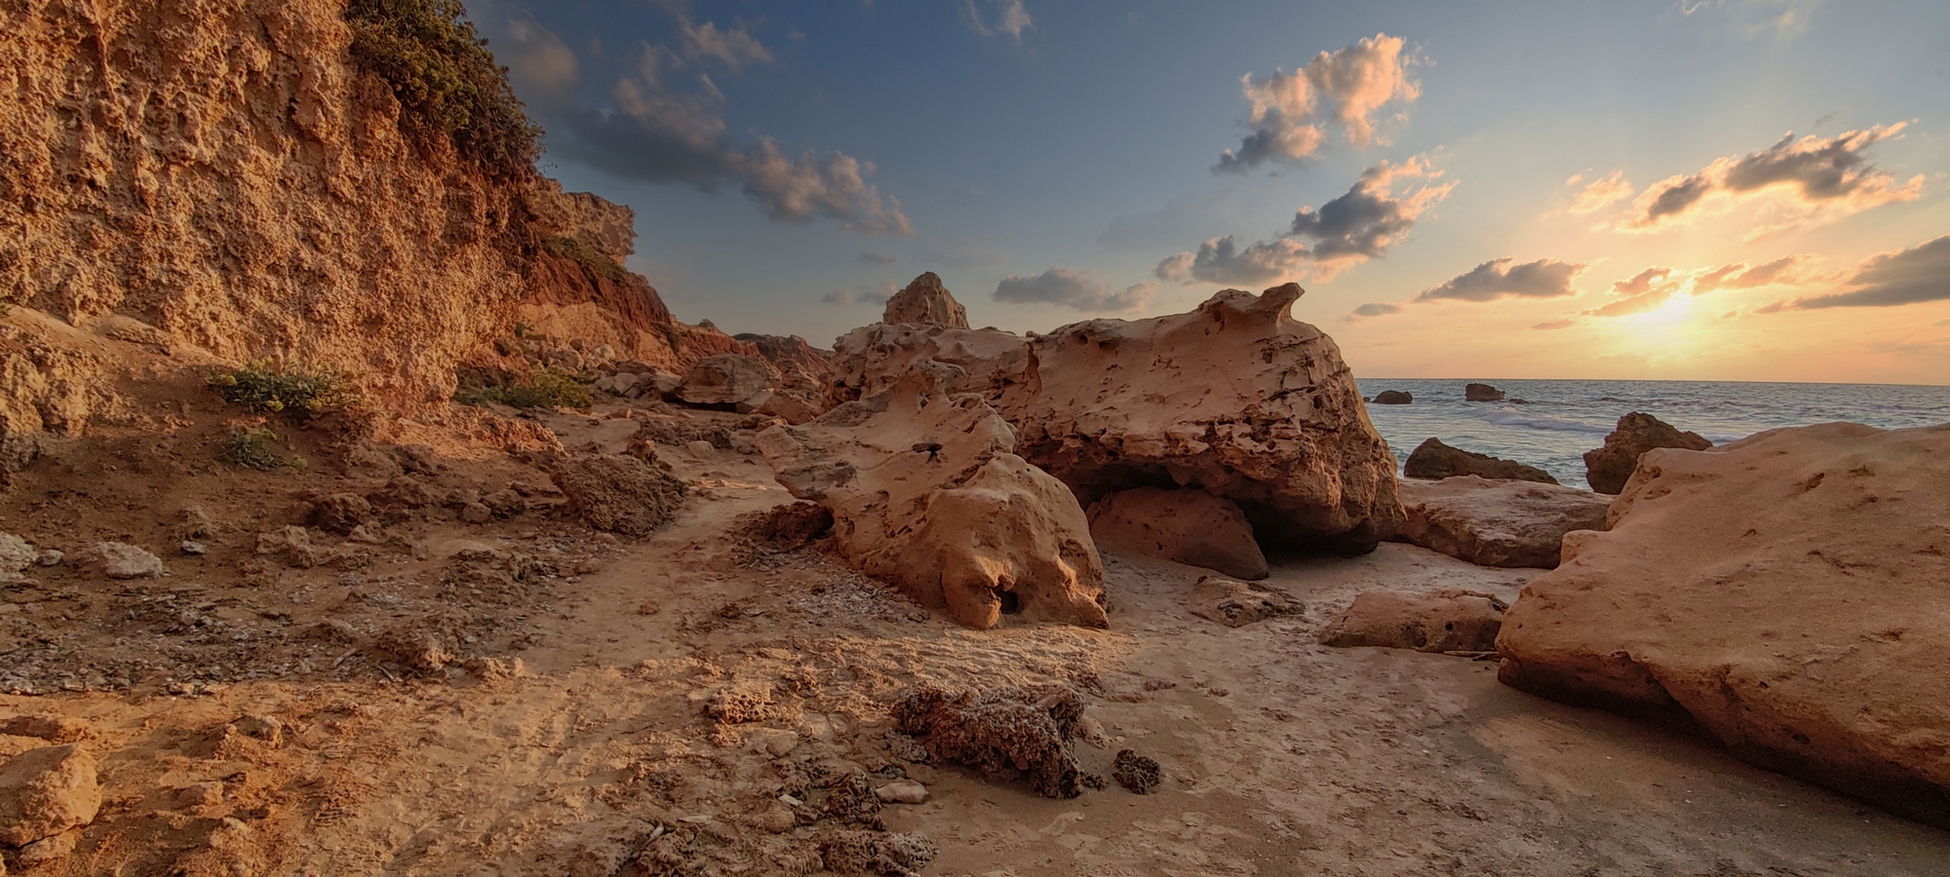 фото "В каменных обьятьях тишины" метки: панорама, Израиль.Хадера.Пляж Гиват Ольг